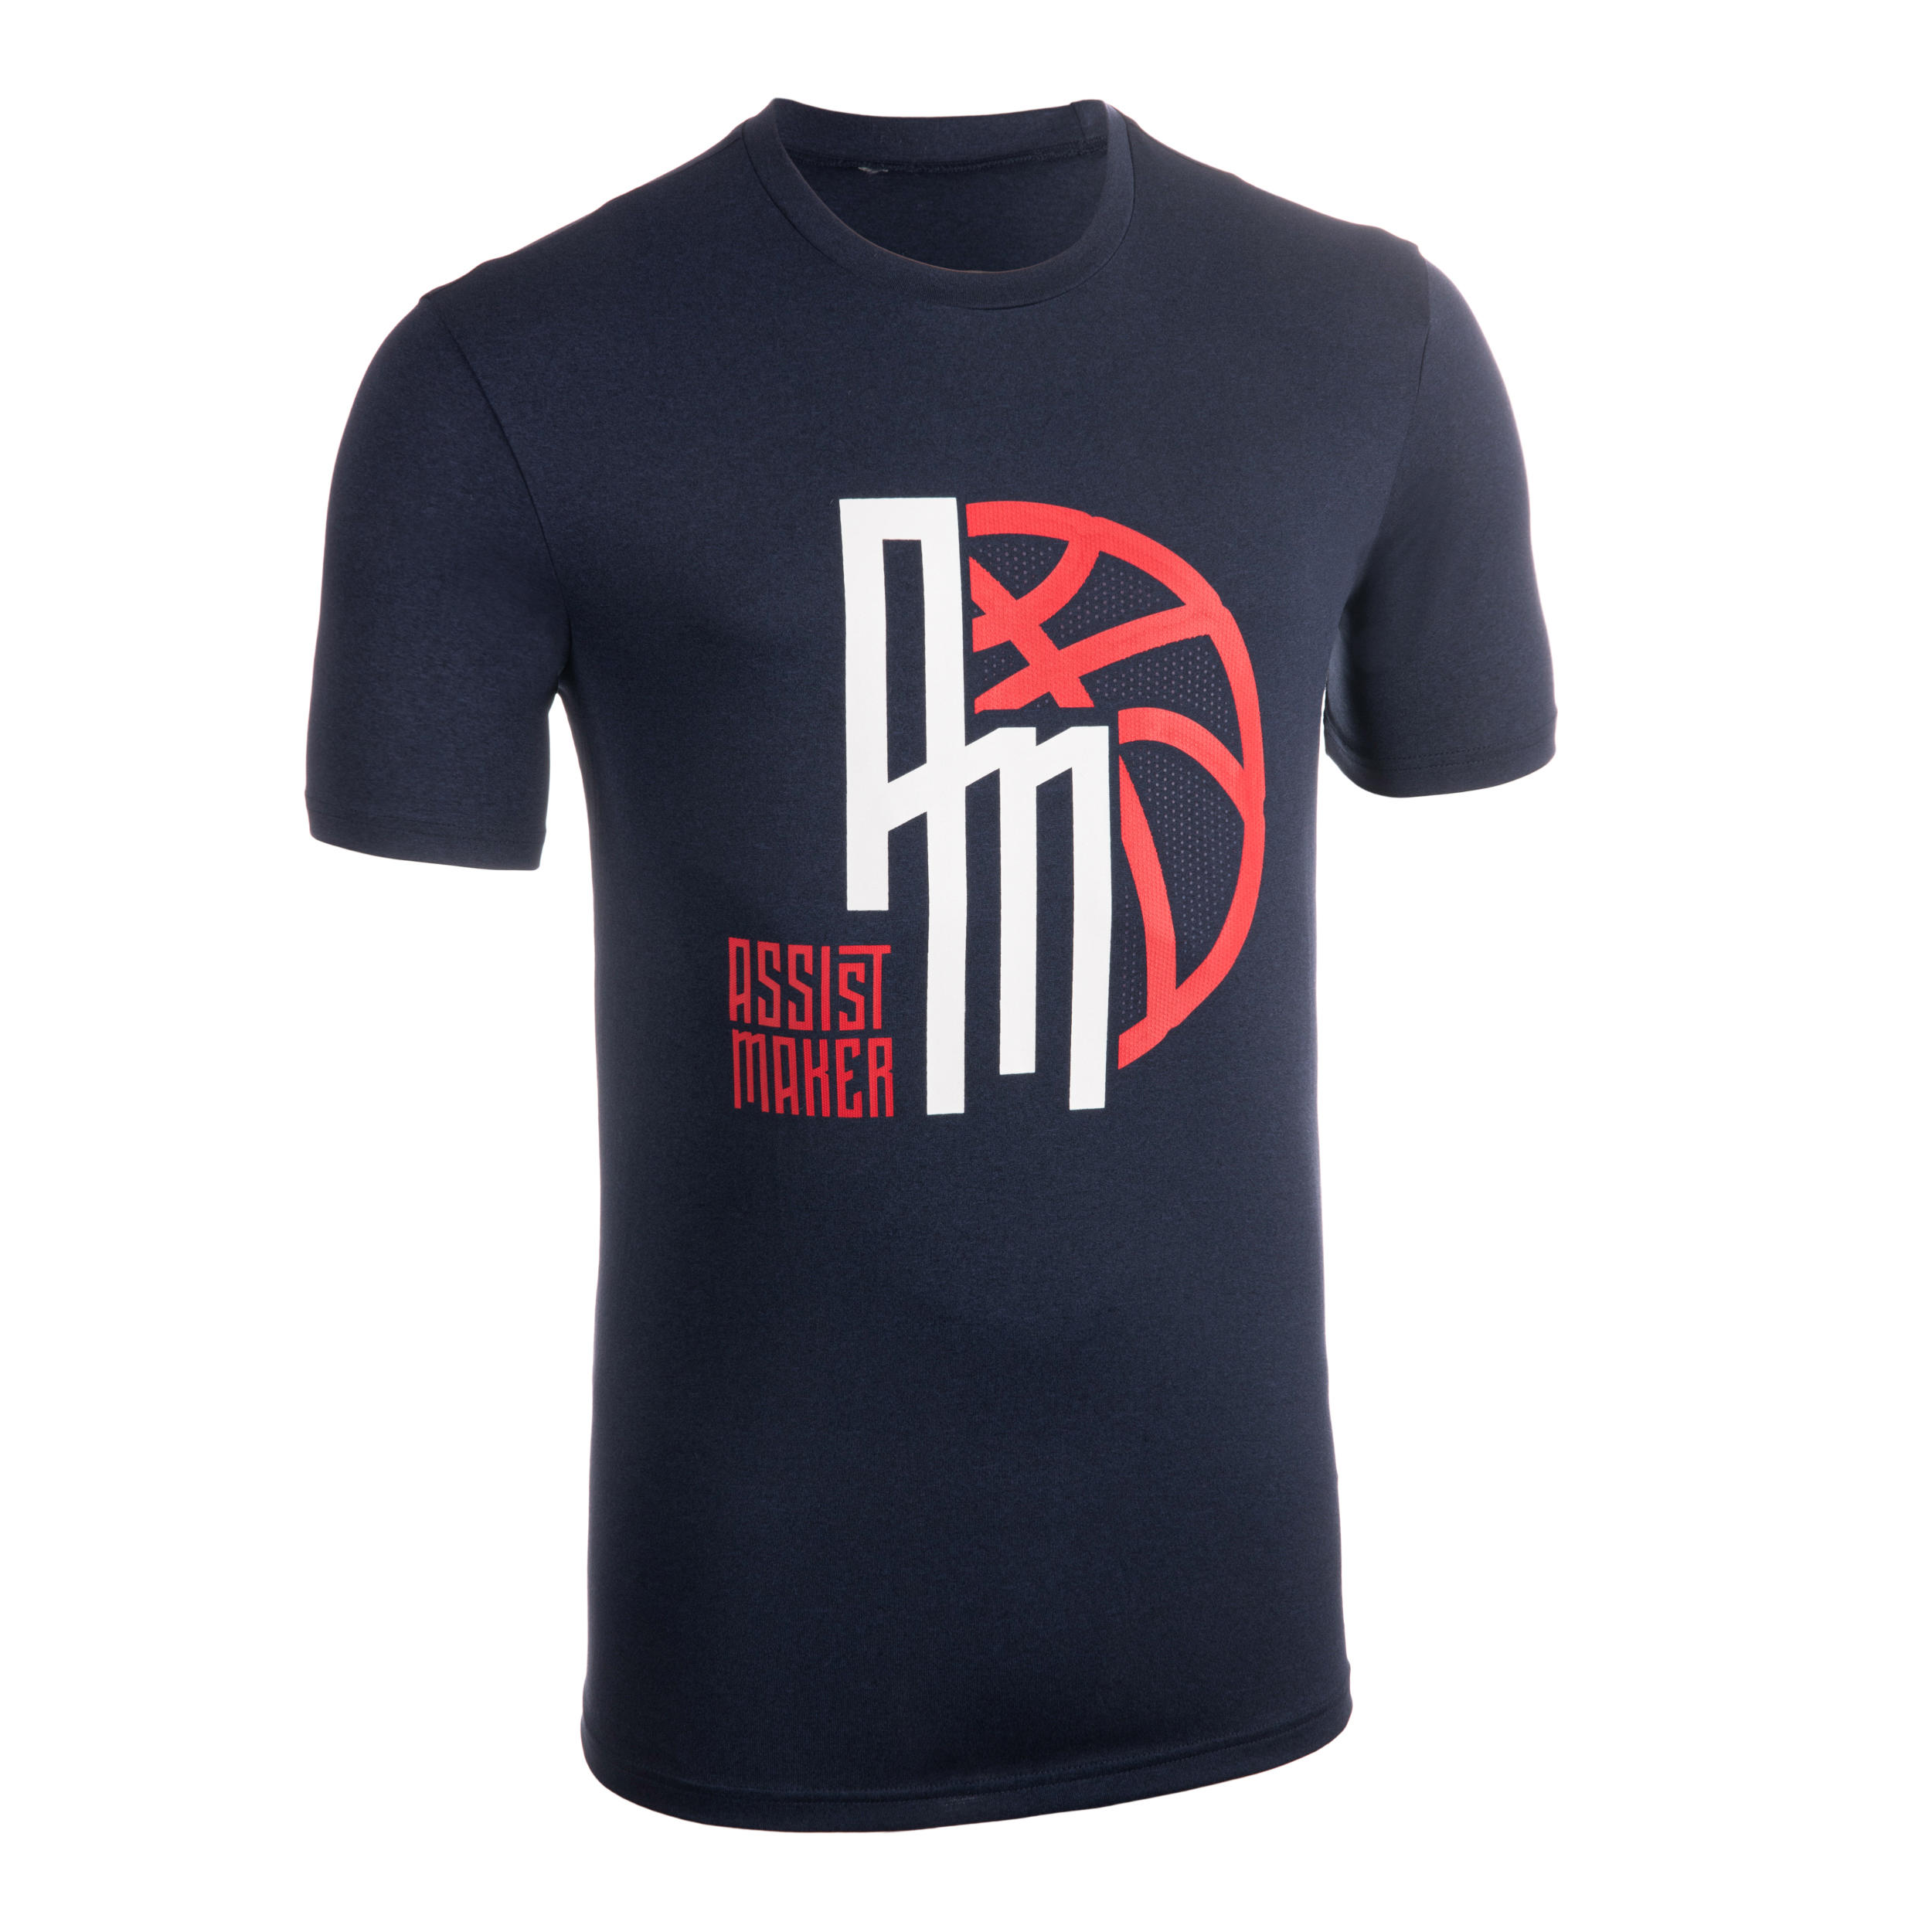 TS500 Basketball T-Shirt/Jersey - Men 